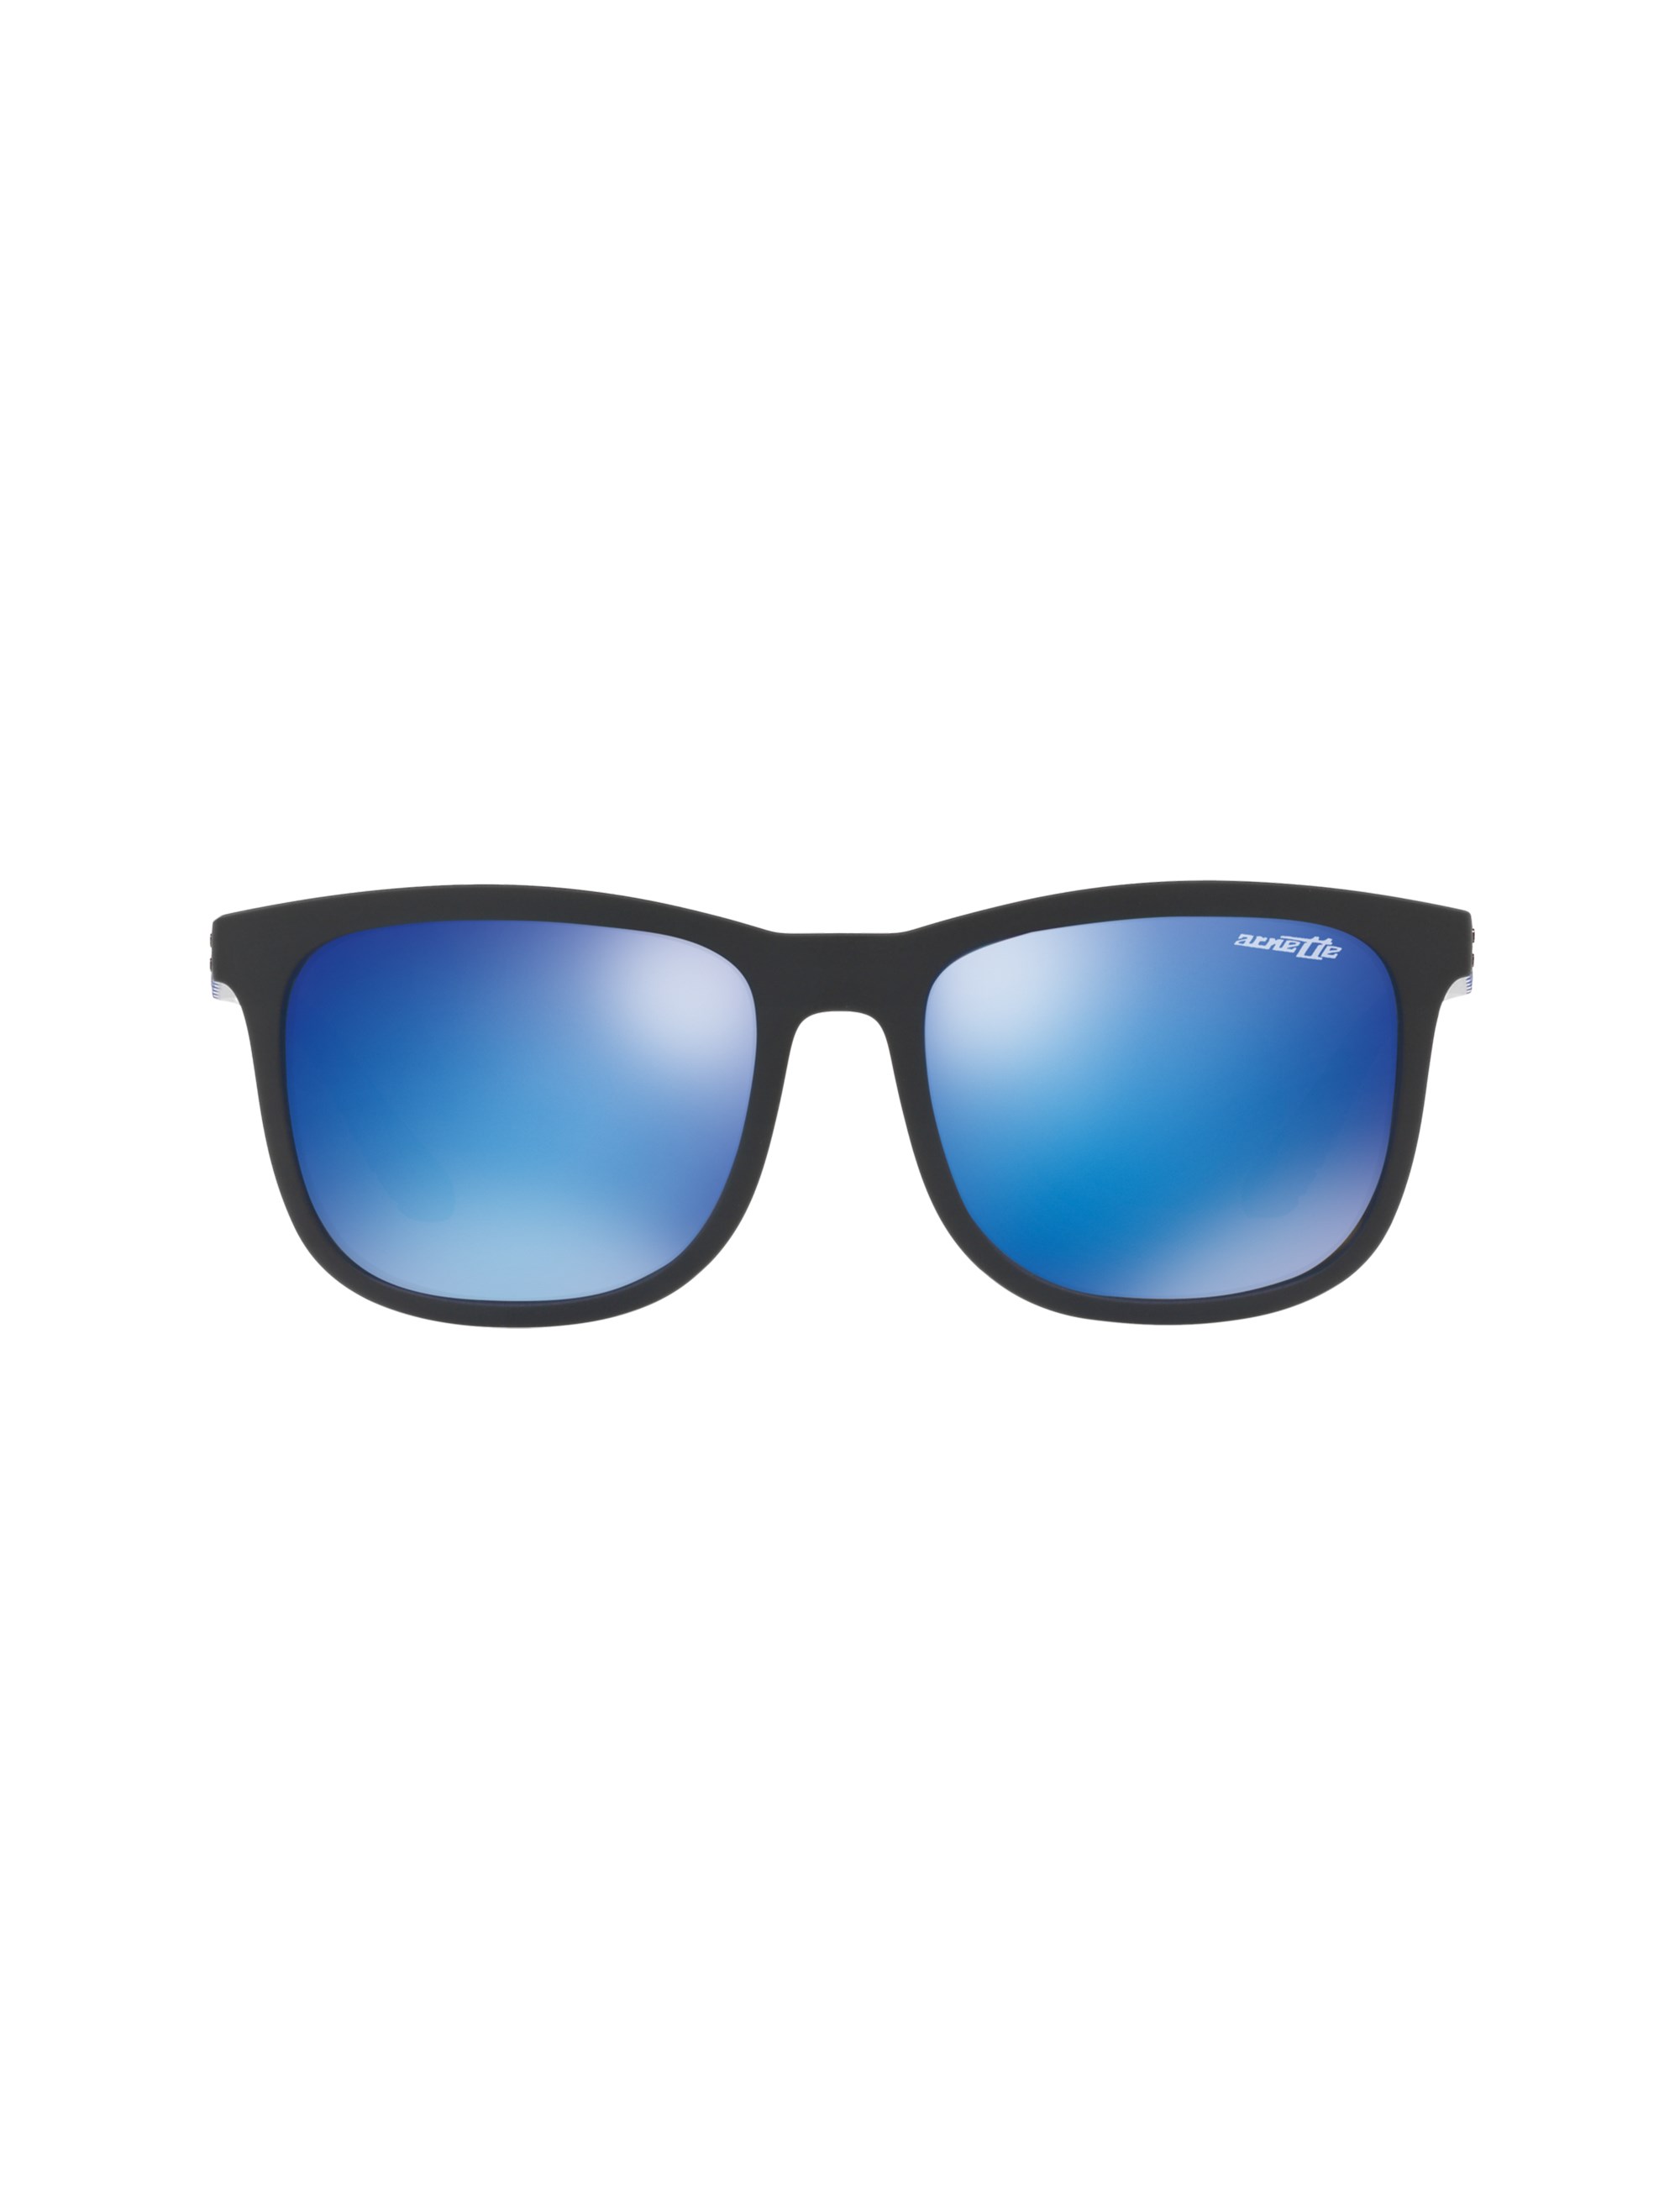 عینک آفتابی ویفرر مردانه - آرنت - مشکي و آبي - 2